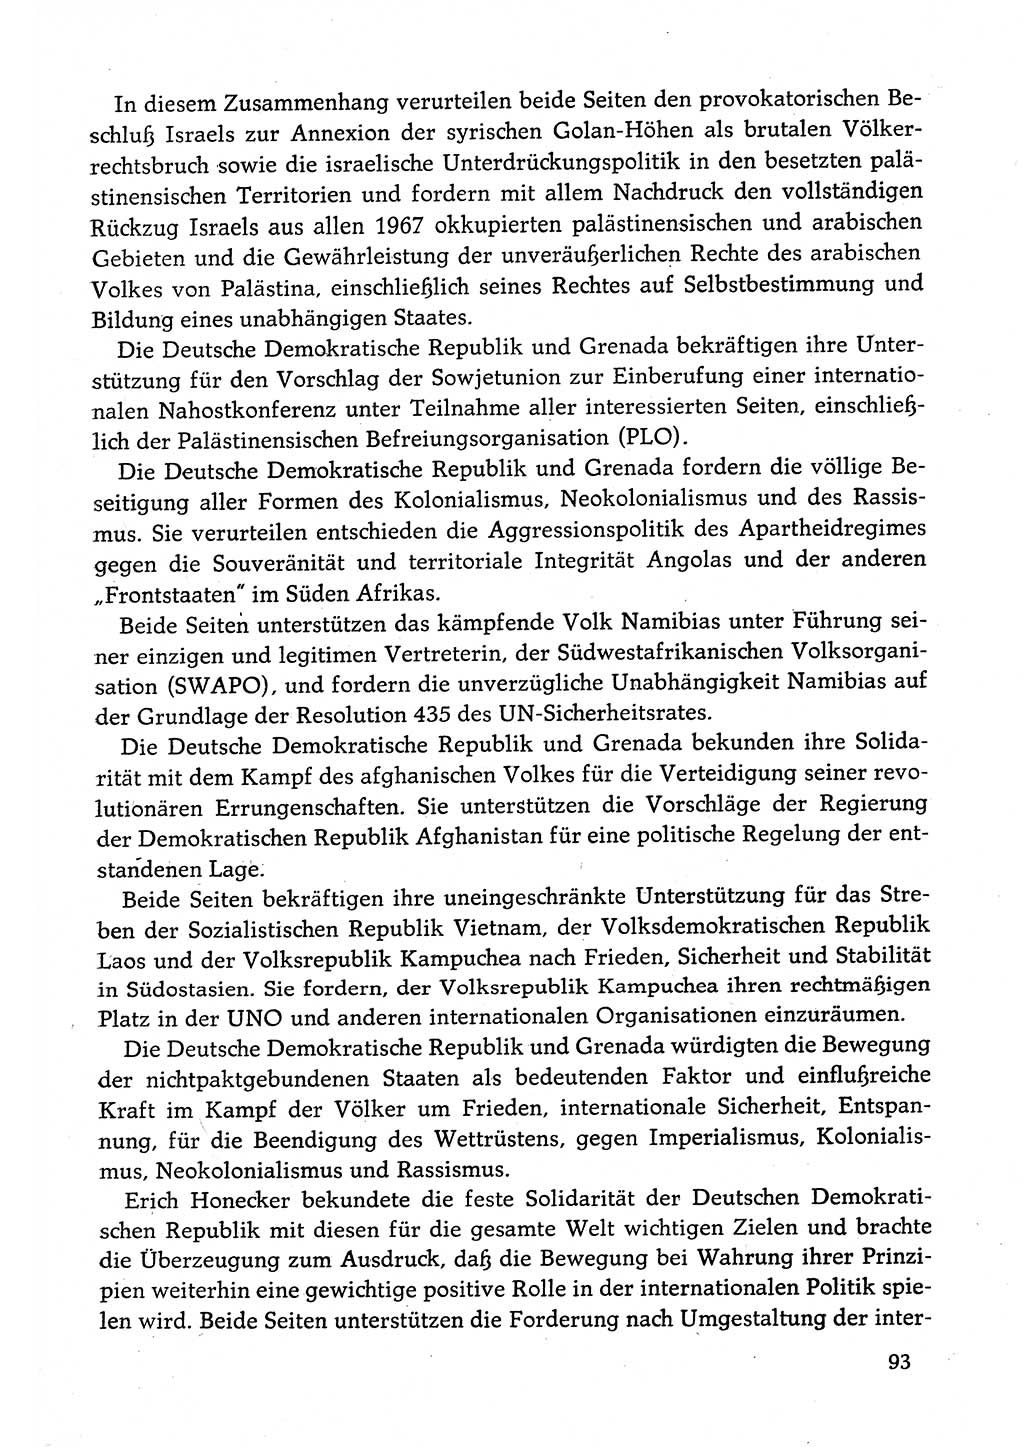 Dokumente der Sozialistischen Einheitspartei Deutschlands (SED) [Deutsche Demokratische Republik (DDR)] 1982-1983, Seite 93 (Dok. SED DDR 1982-1983, S. 93)